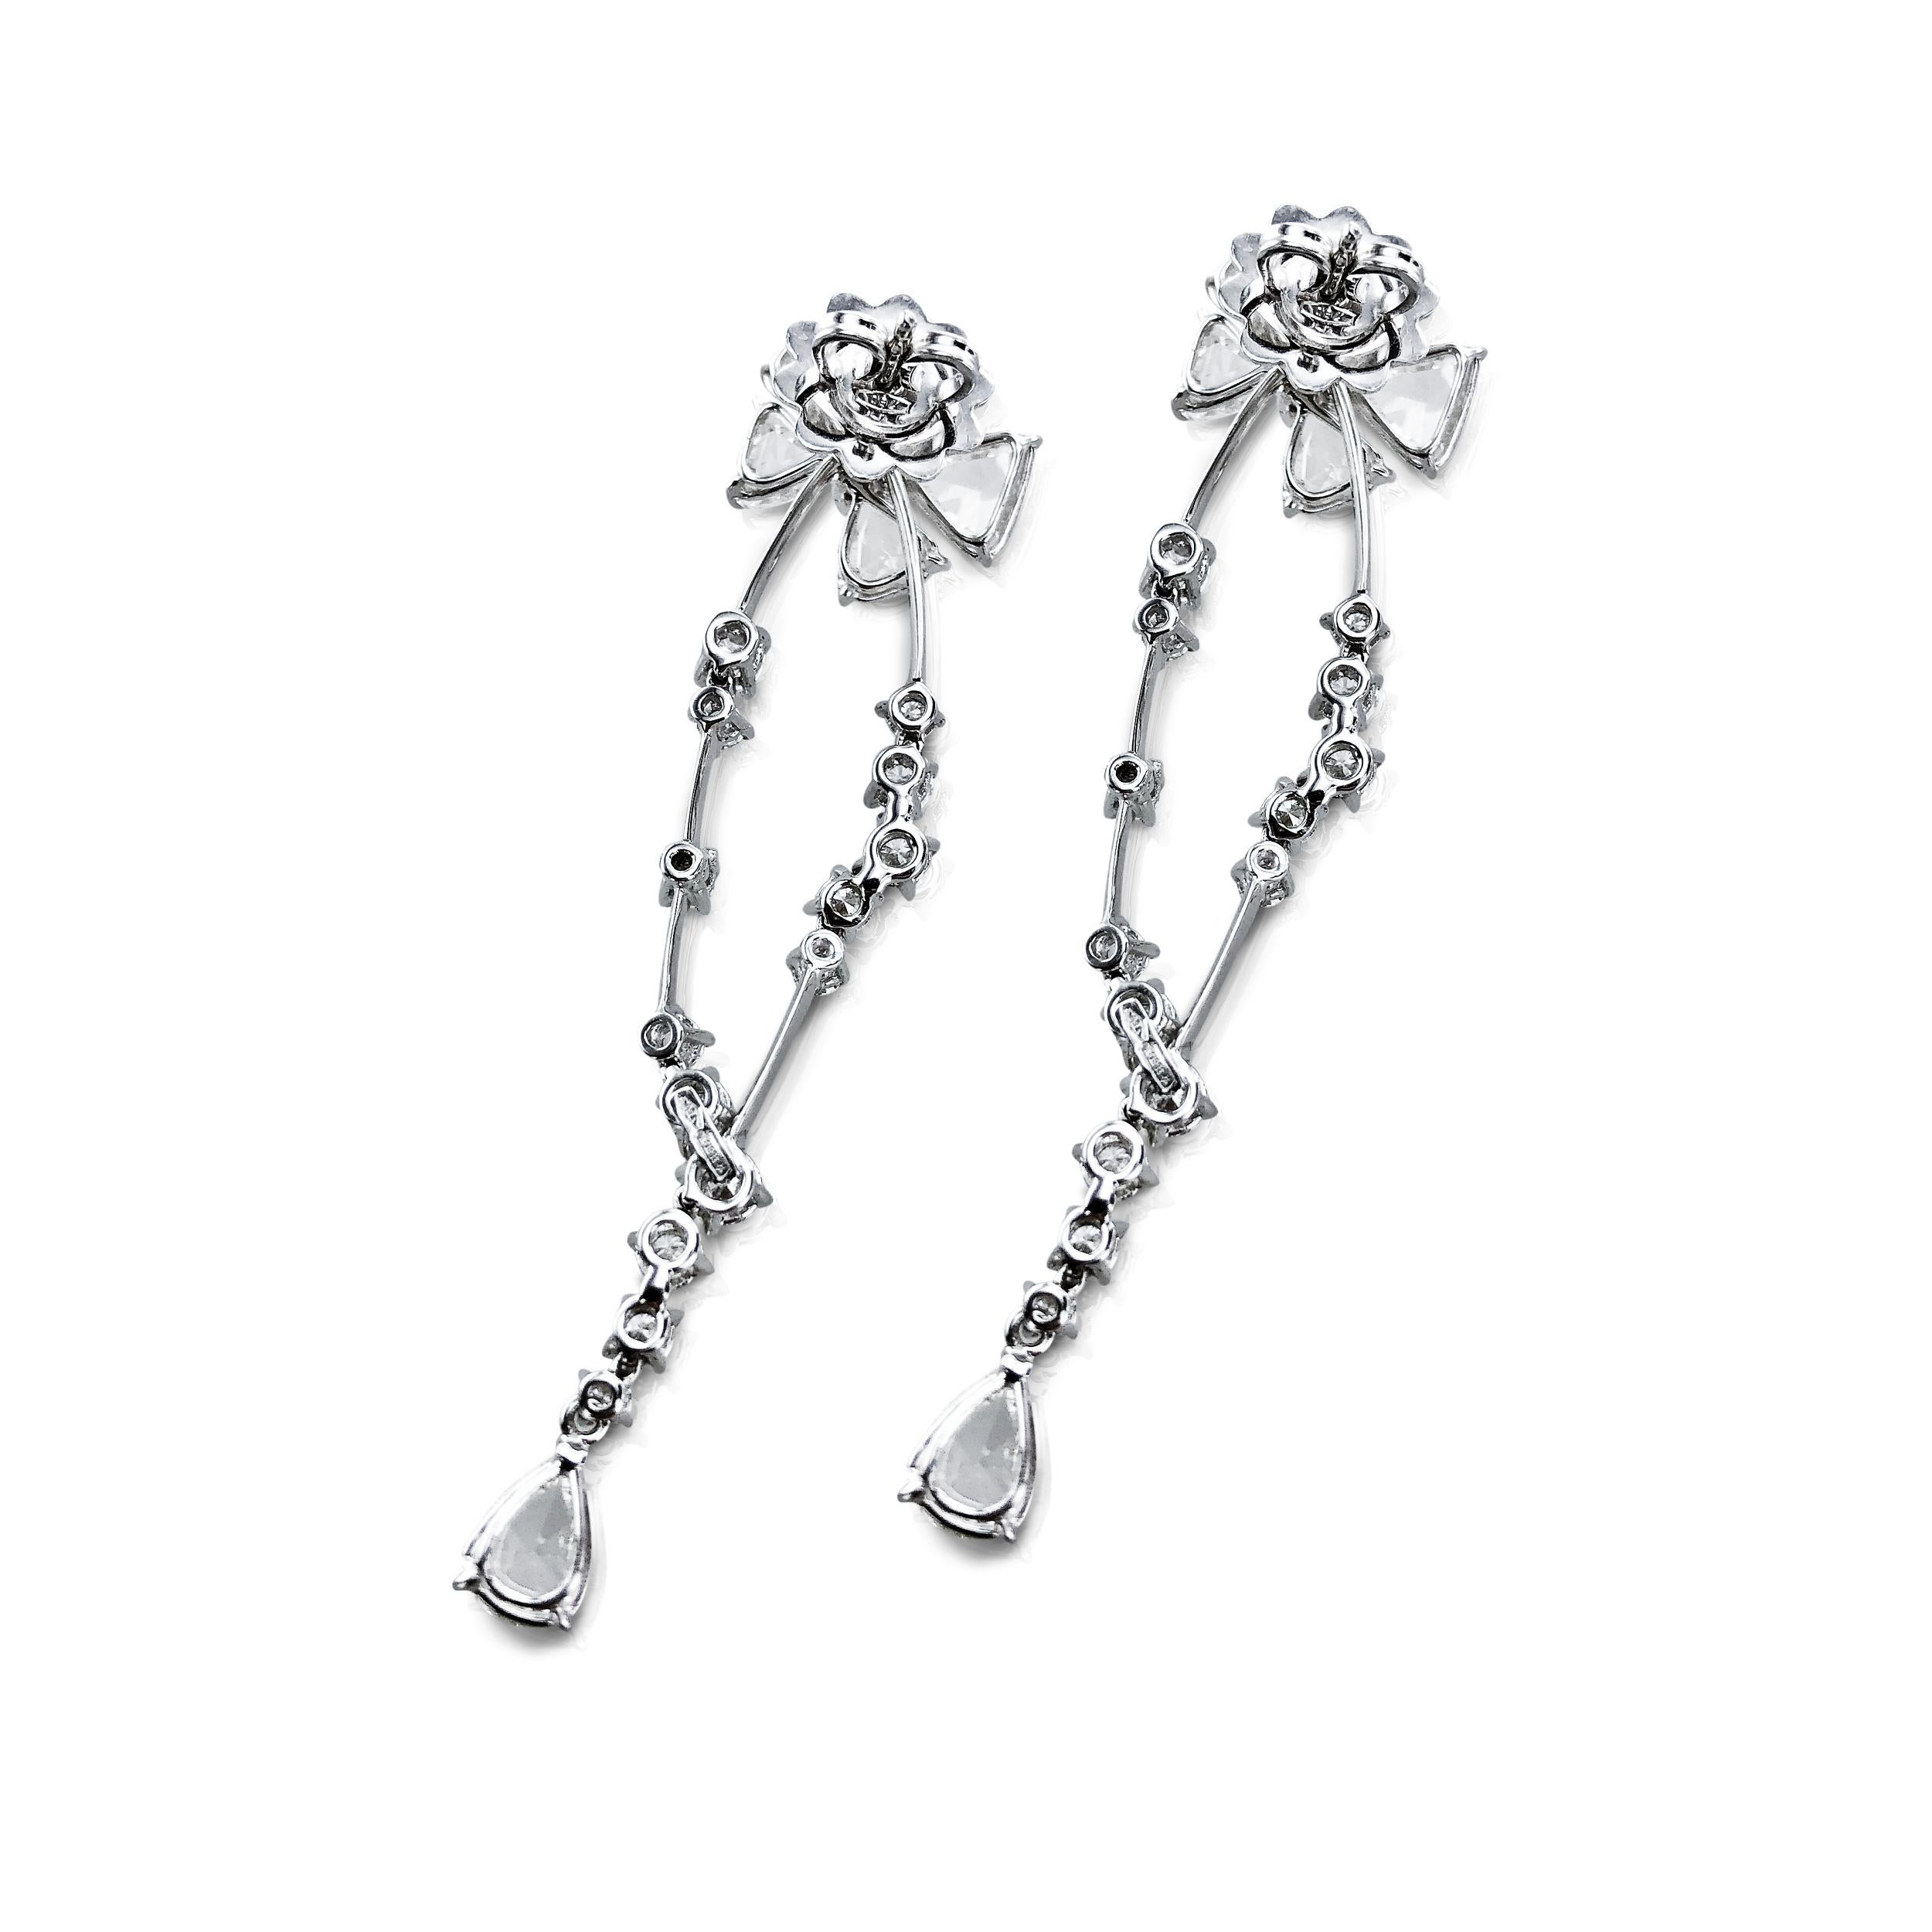 Ces boucles d'oreilles pendantes en diamant Rose Cut de 7,42 carats sont magnifiquement montées en or blanc 18 carats.  

Le travail artisanal unique consiste à faire pendre des nœuds en diamant taillé en rose (1,5 cm de largeur et 1,1 cm de